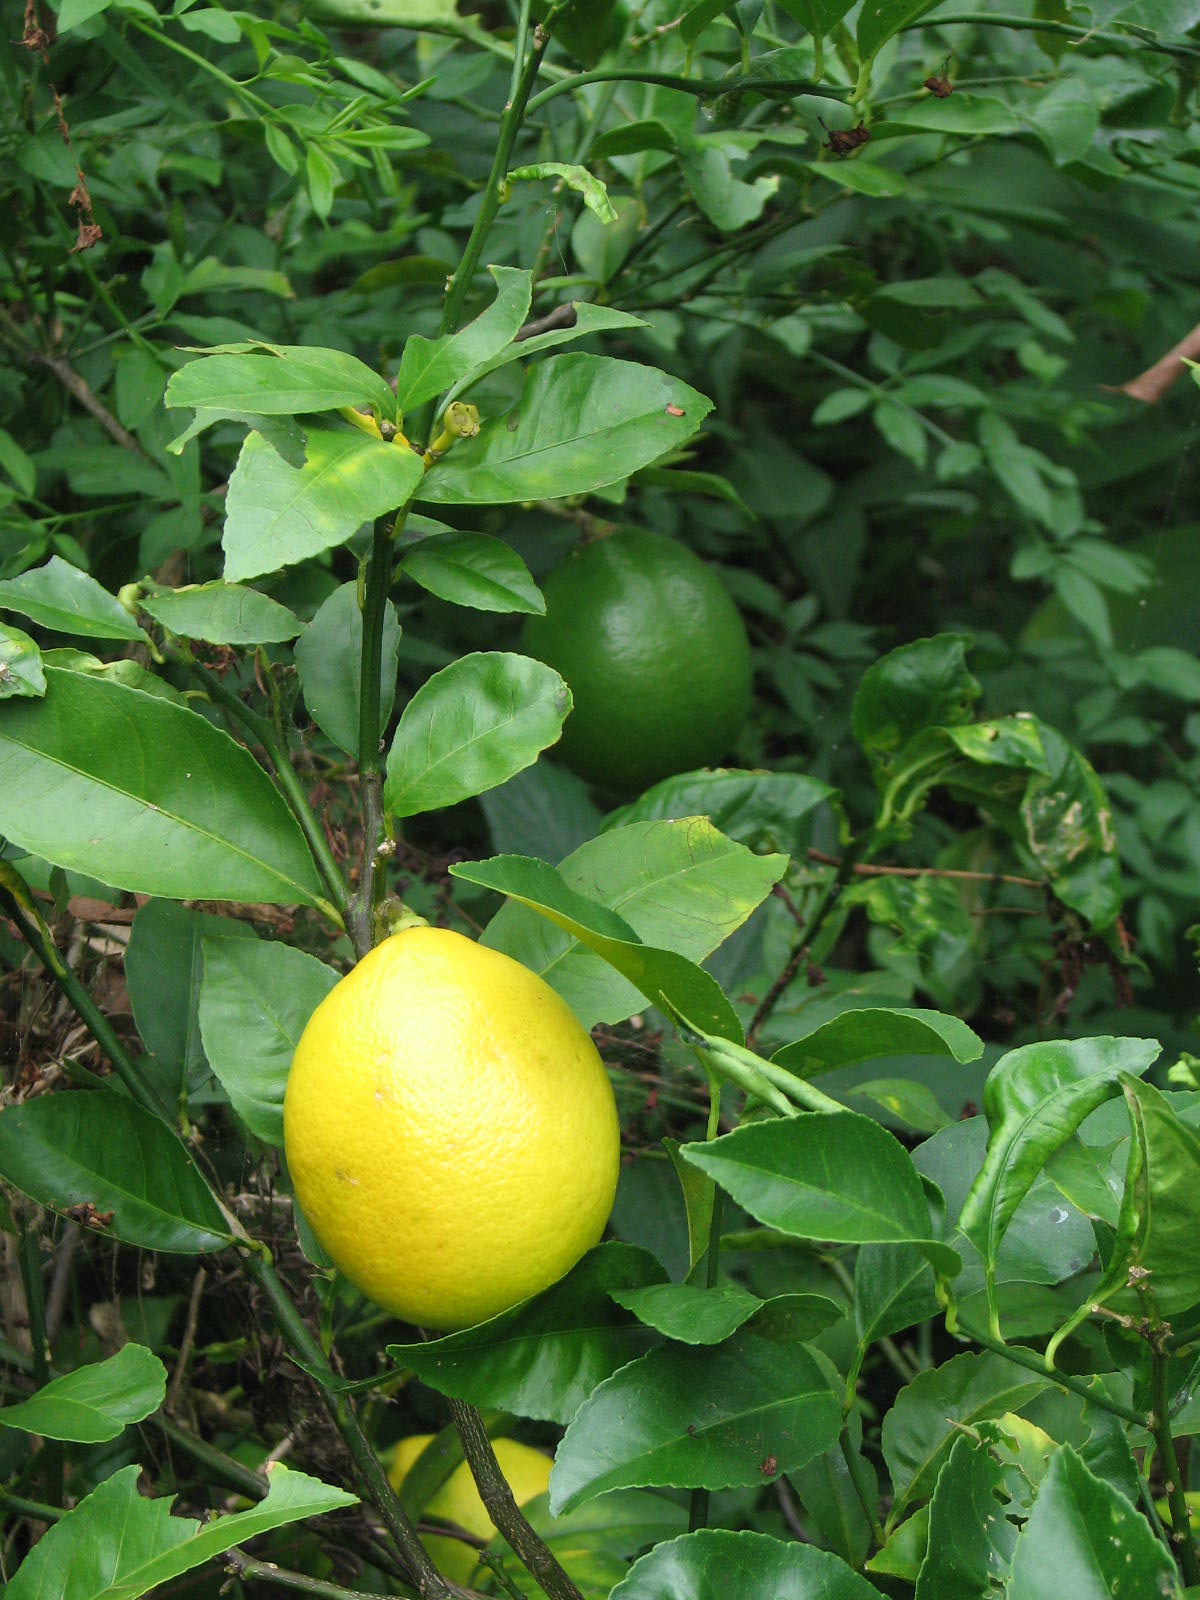 Lemons ripening